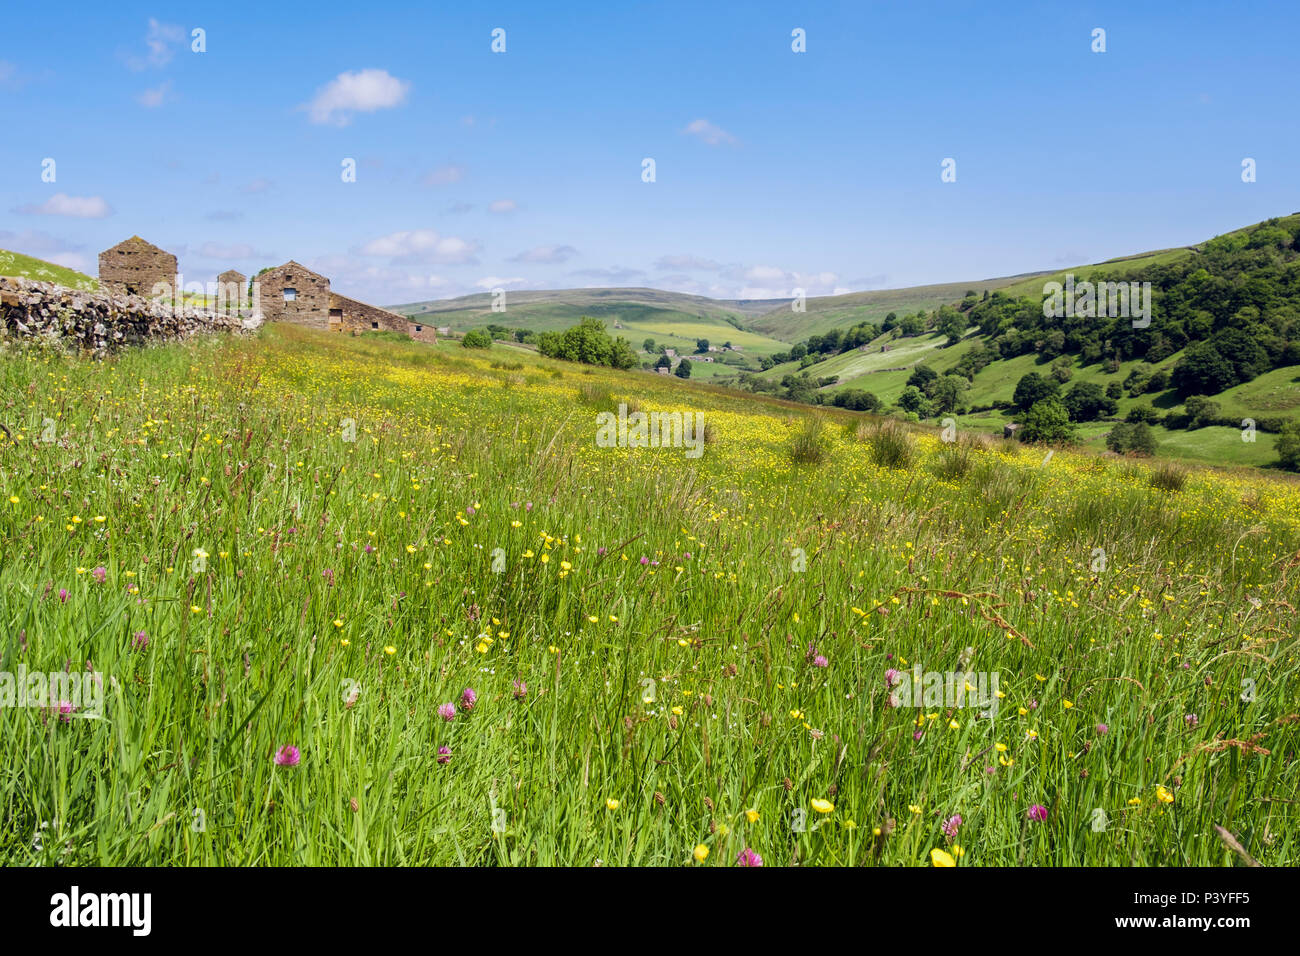 Scène de pays avec champ de fleurs sauvages de Meadow renoncules et trèfle dans la campagne en été. La région de Swaledale Yorkshire Dales National Park England UK Banque D'Images